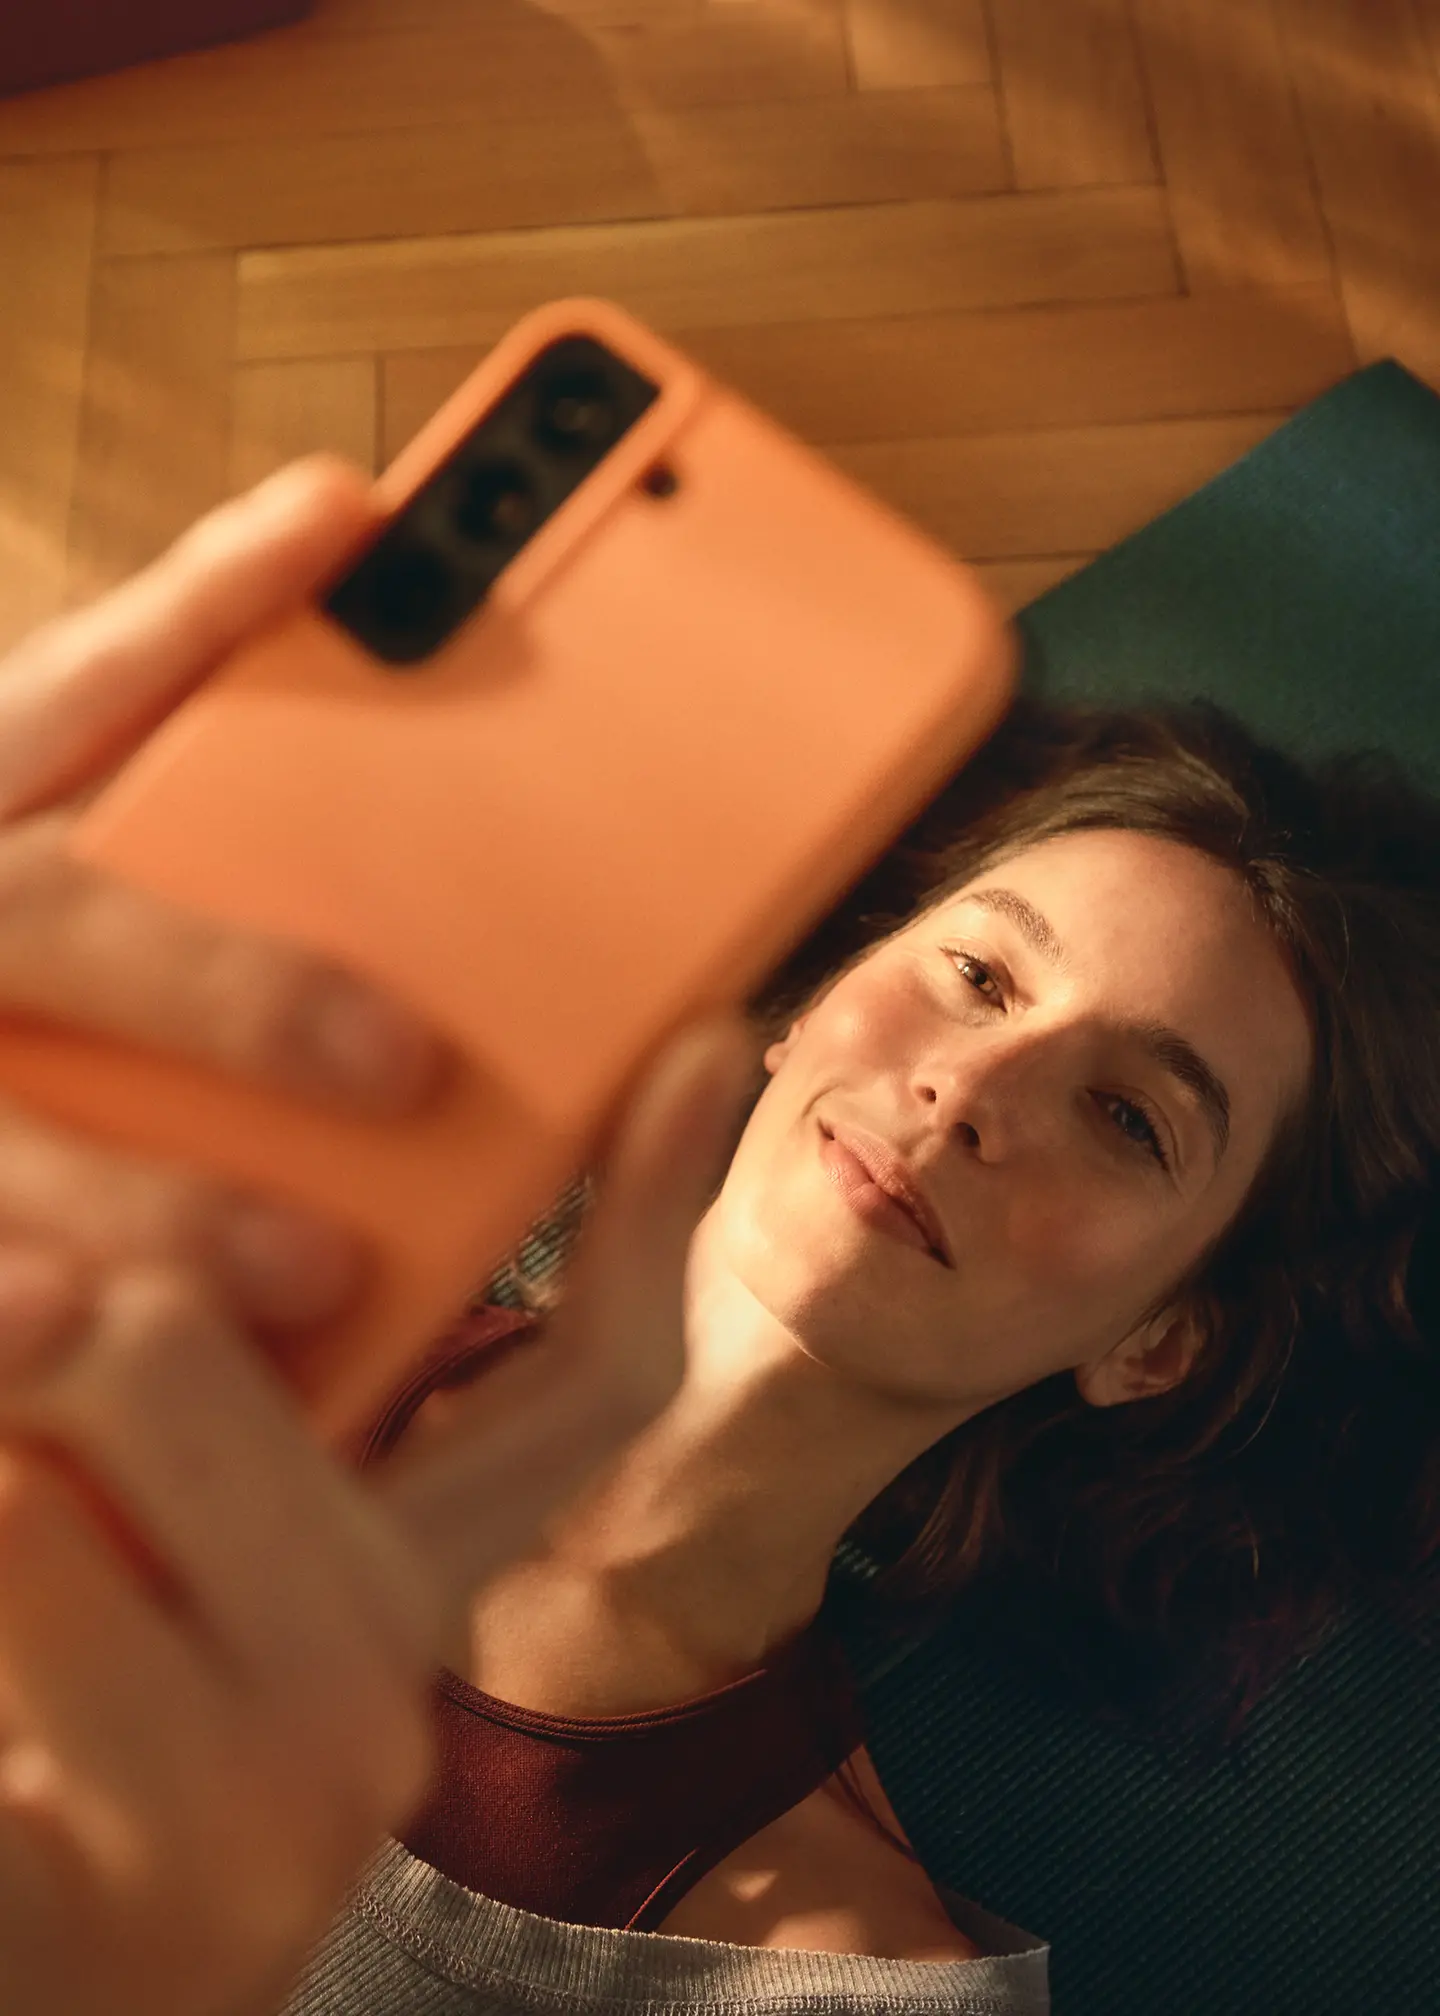 Eine Frau mit braunen schulterlangen Haaren schaut auf ihr Smartphone.